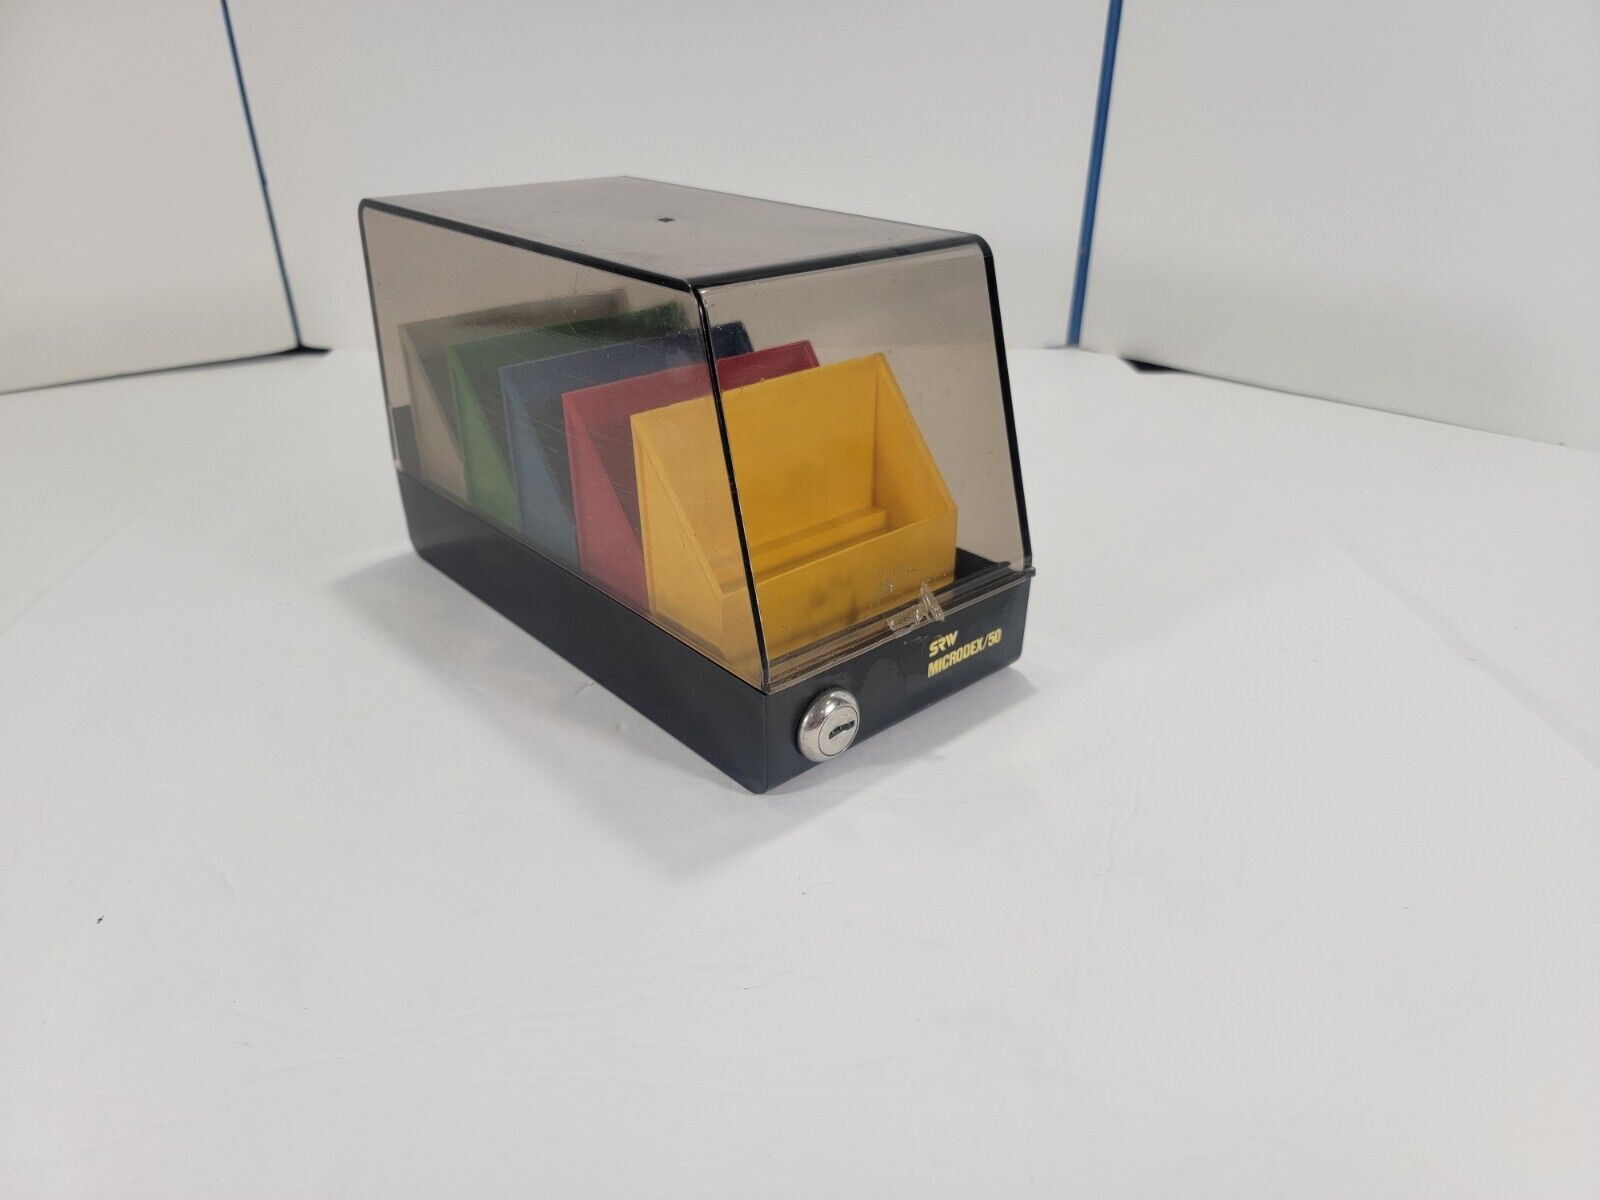 Vintage SRW Microdex 25 Computer Floppy Disk Holder Organizer Case Storage Box